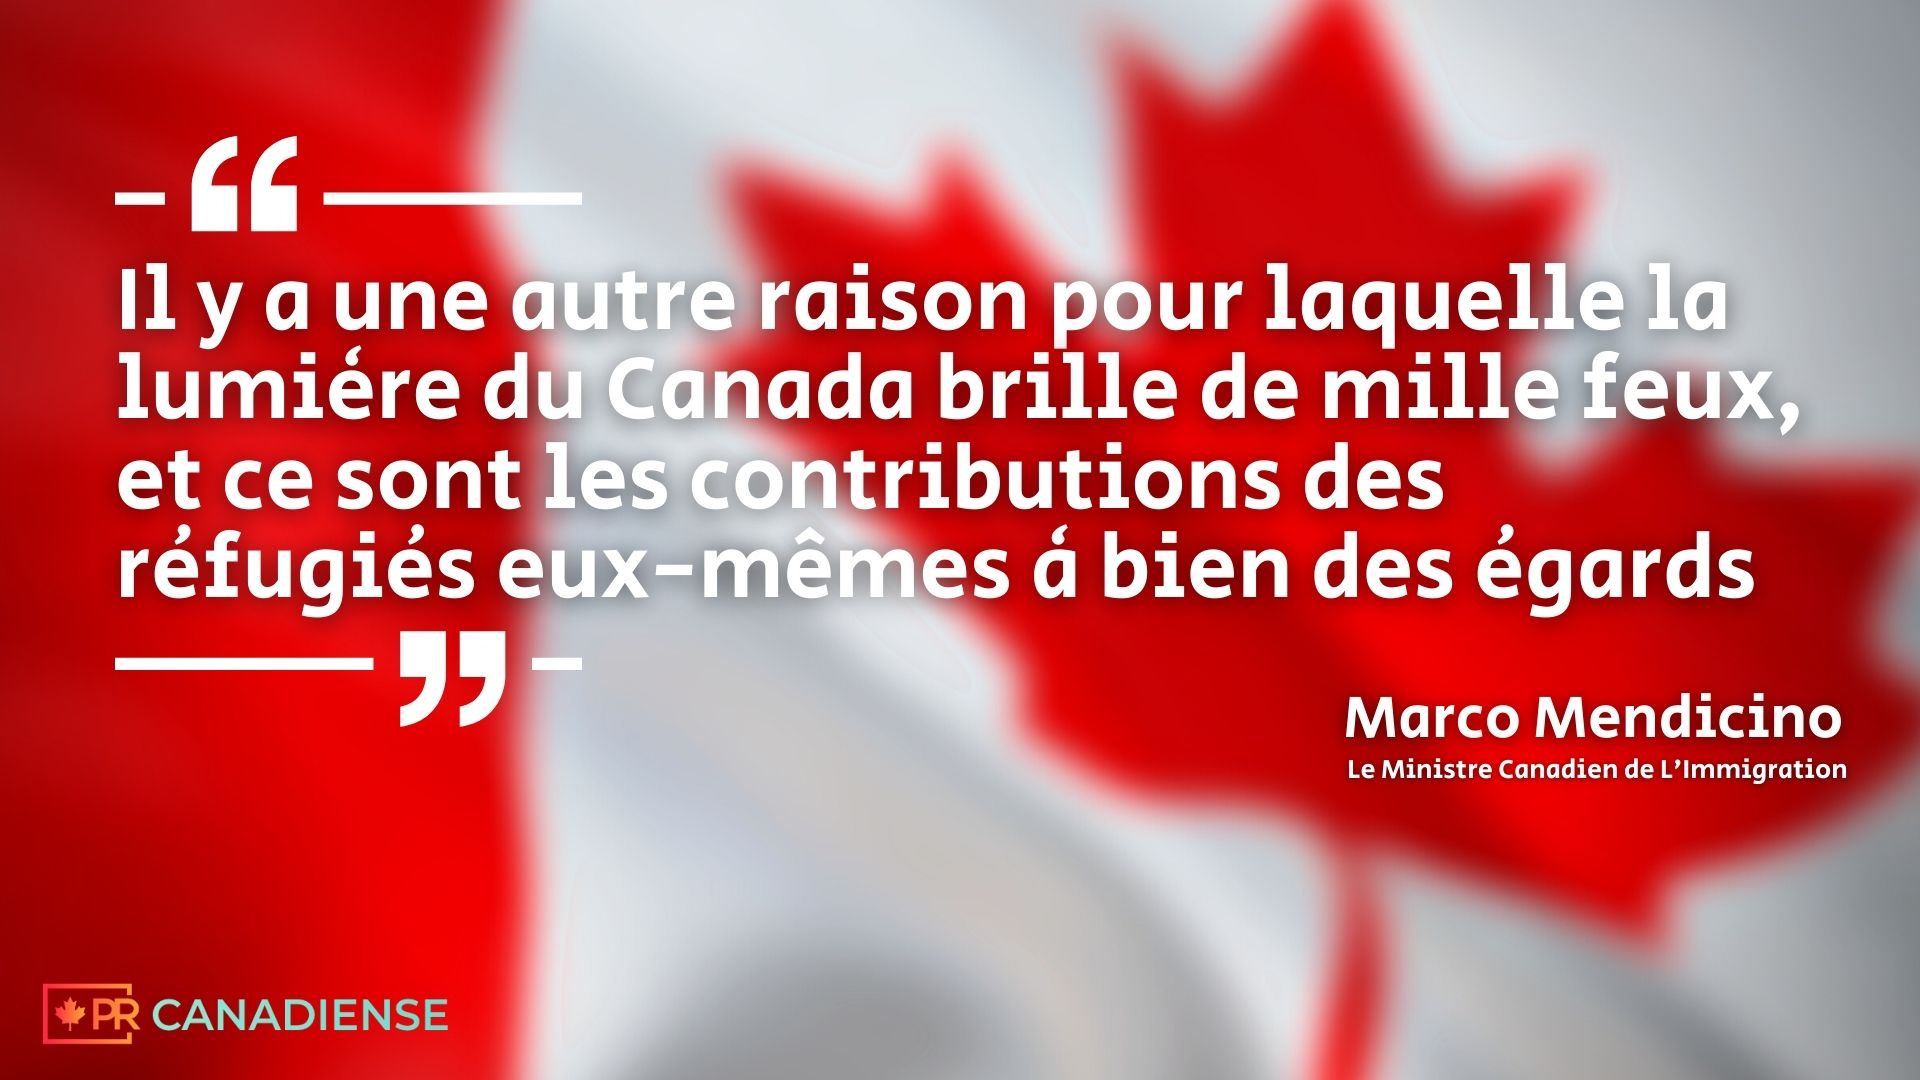 PR CANADIENSE - Marco Mendicino